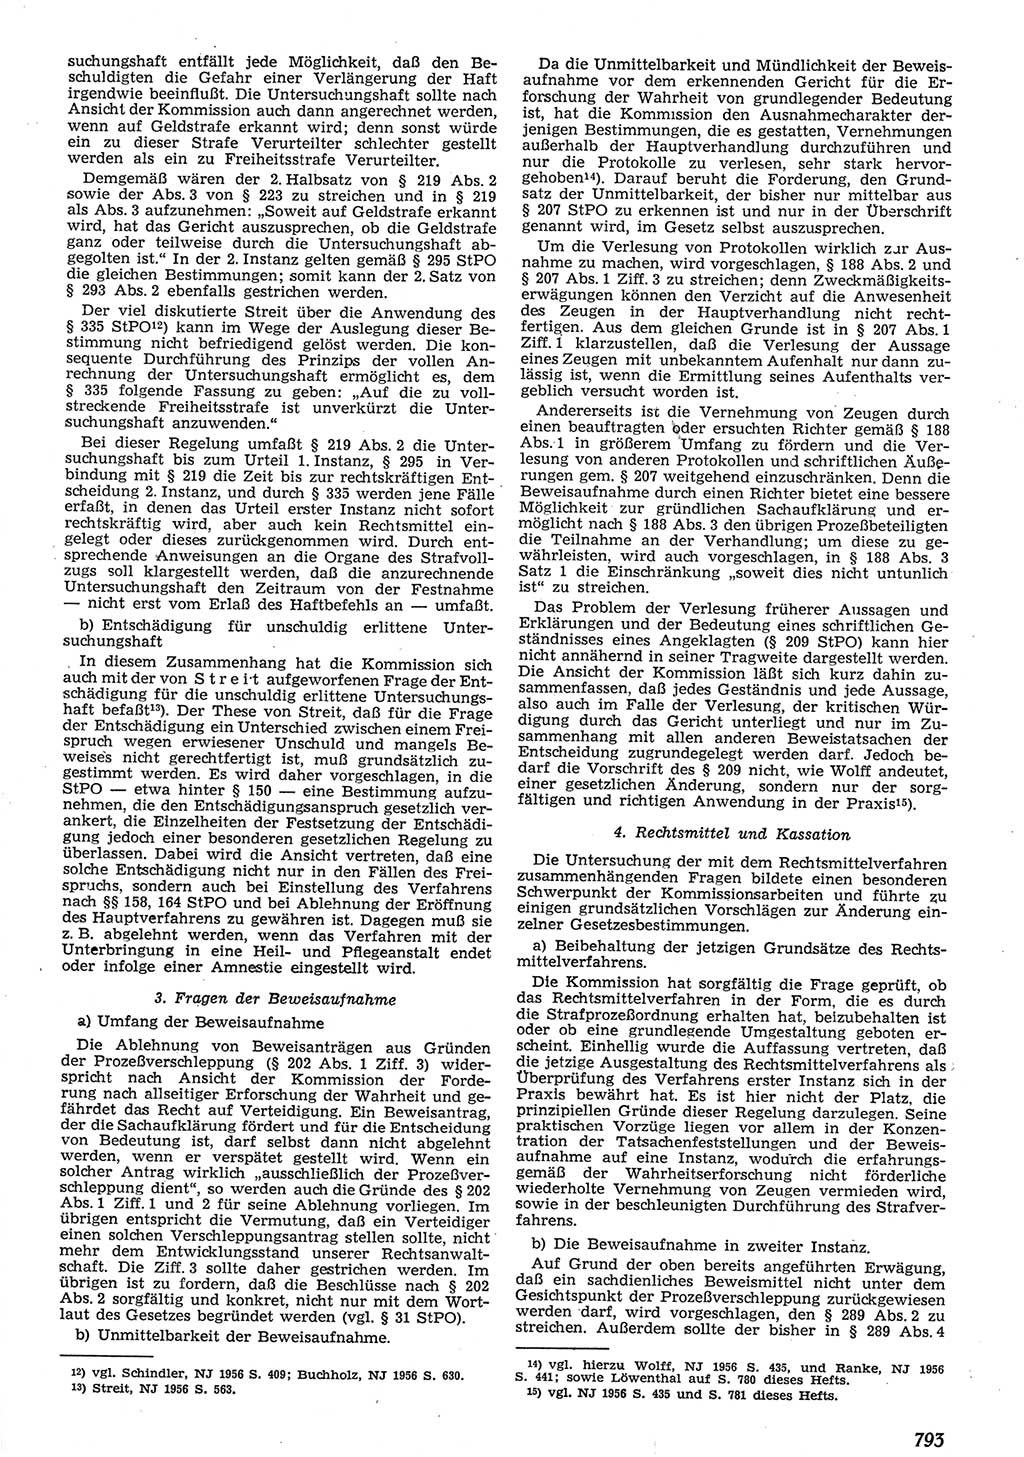 Neue Justiz (NJ), Zeitschrift für Recht und Rechtswissenschaft [Deutsche Demokratische Republik (DDR)], 10. Jahrgang 1956, Seite 793 (NJ DDR 1956, S. 793)